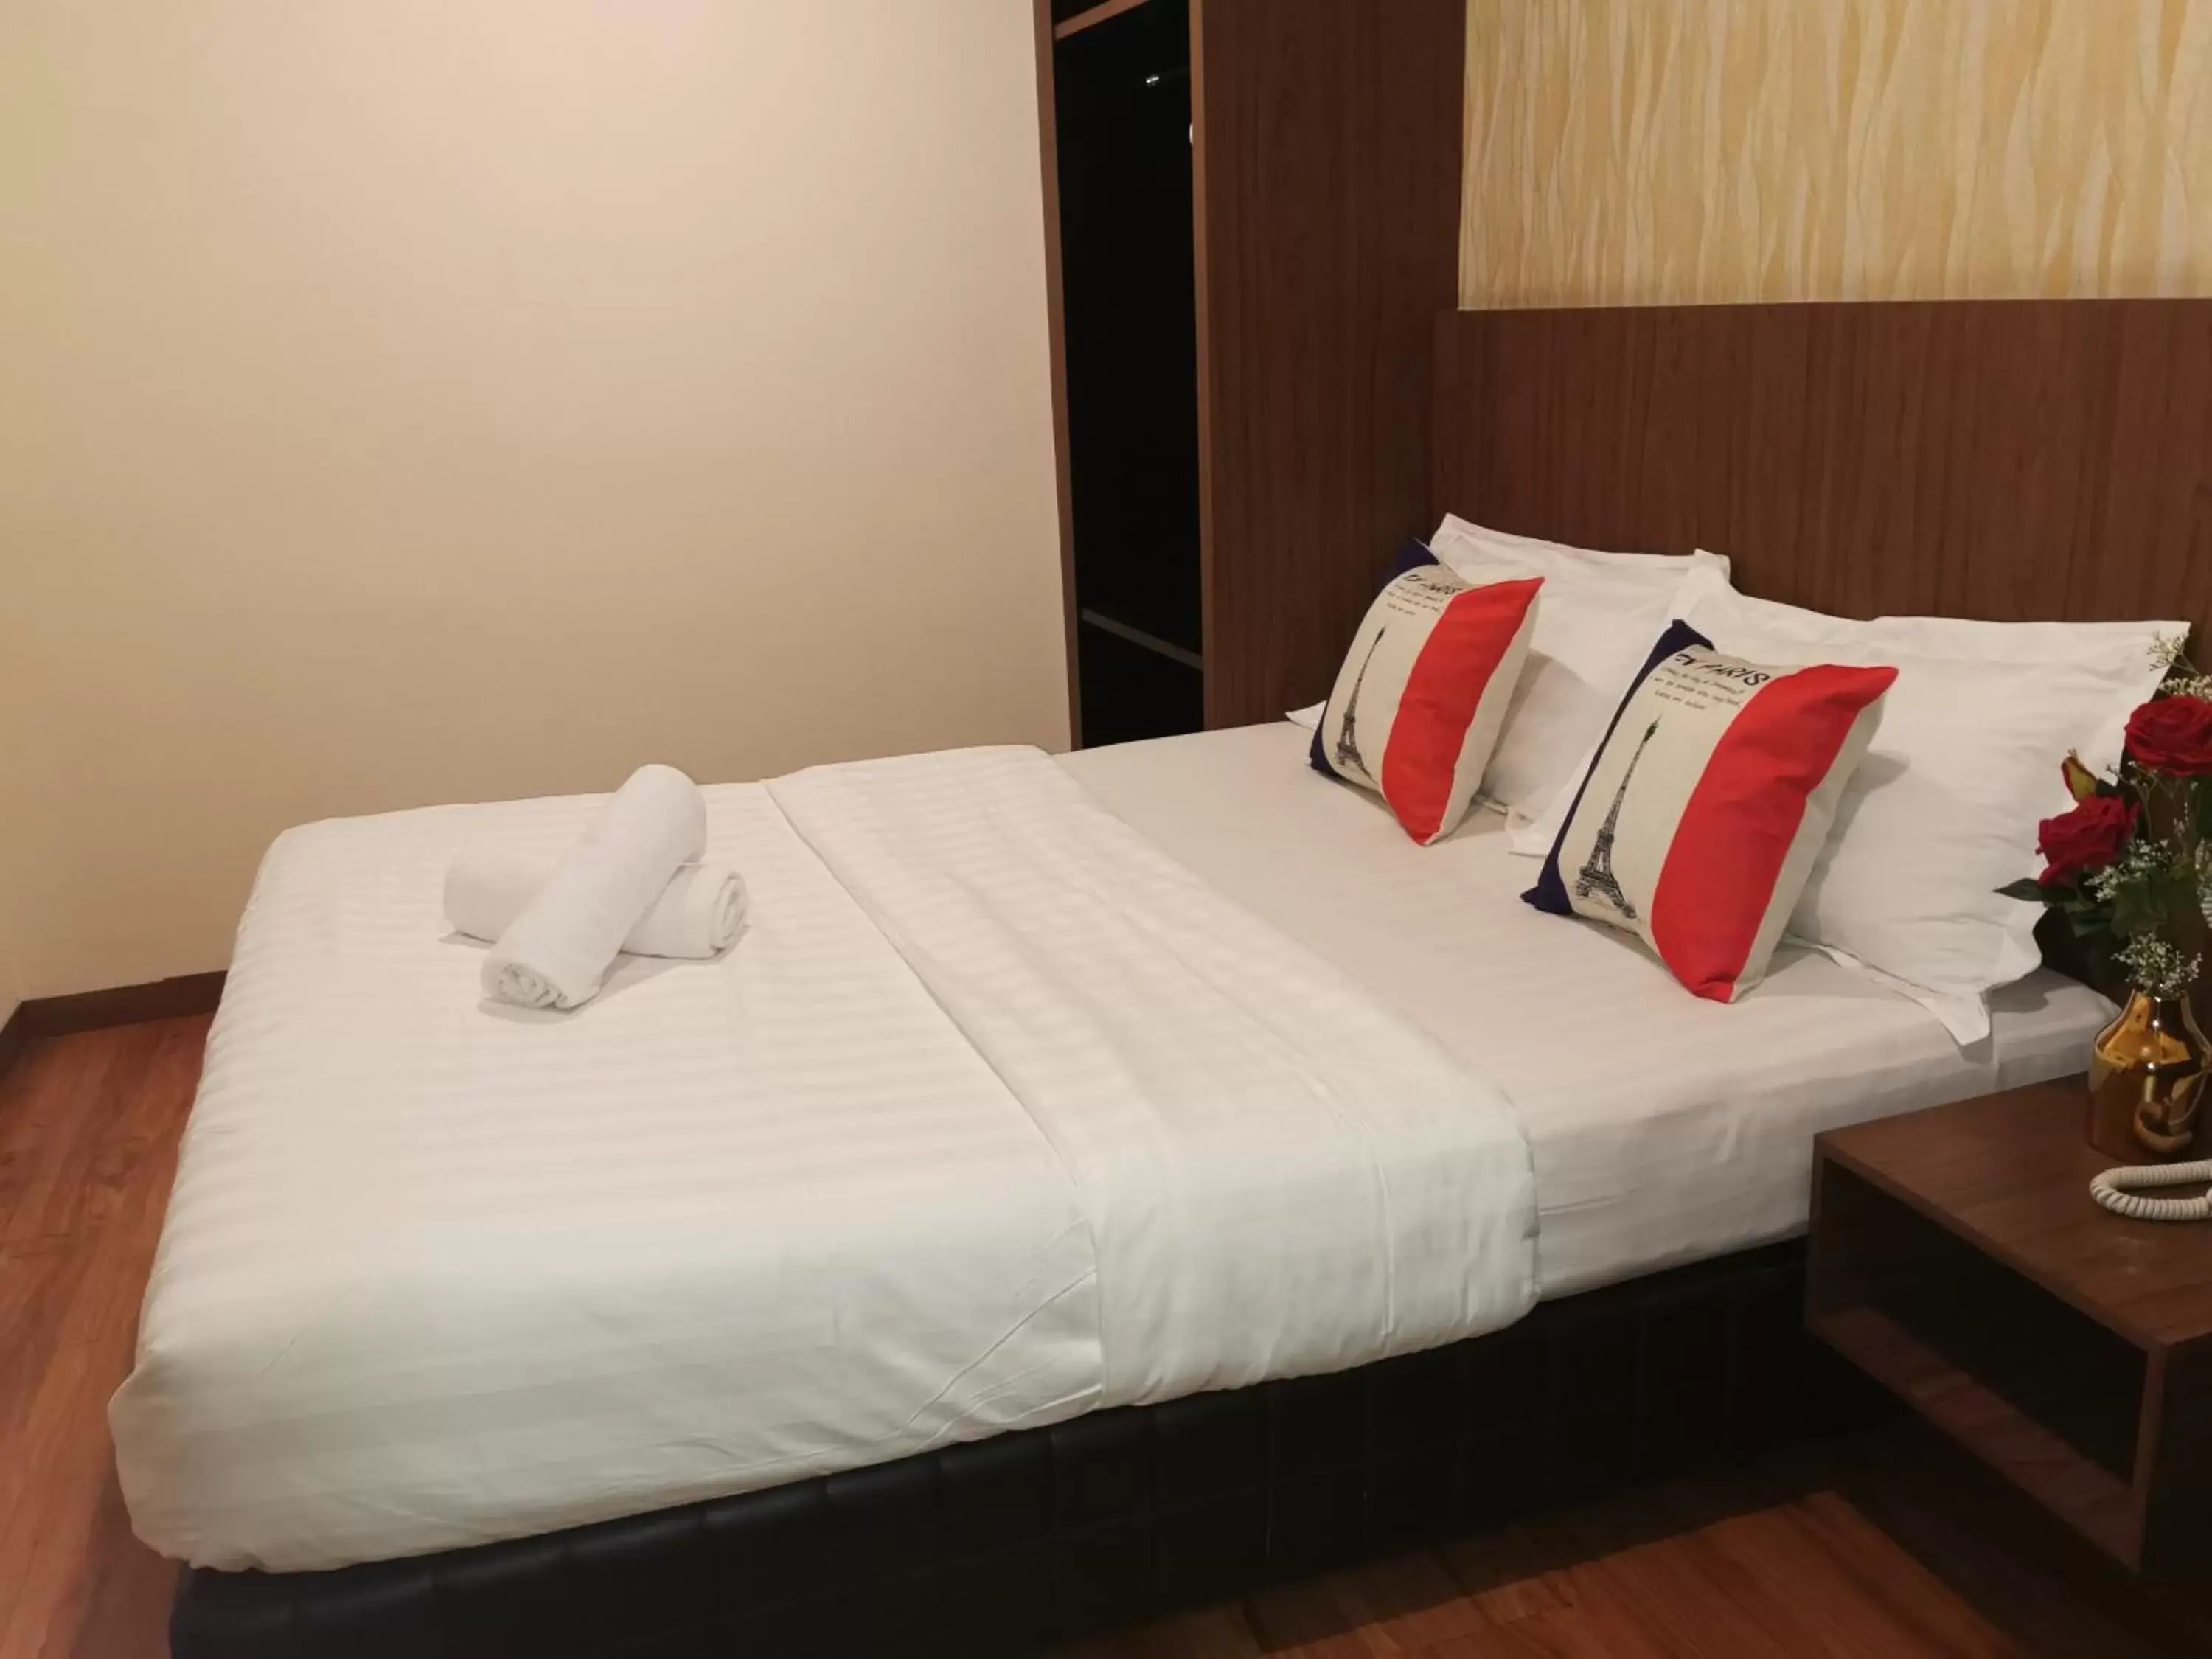 Bedroom, Bed in MII Smile Hotel Penang